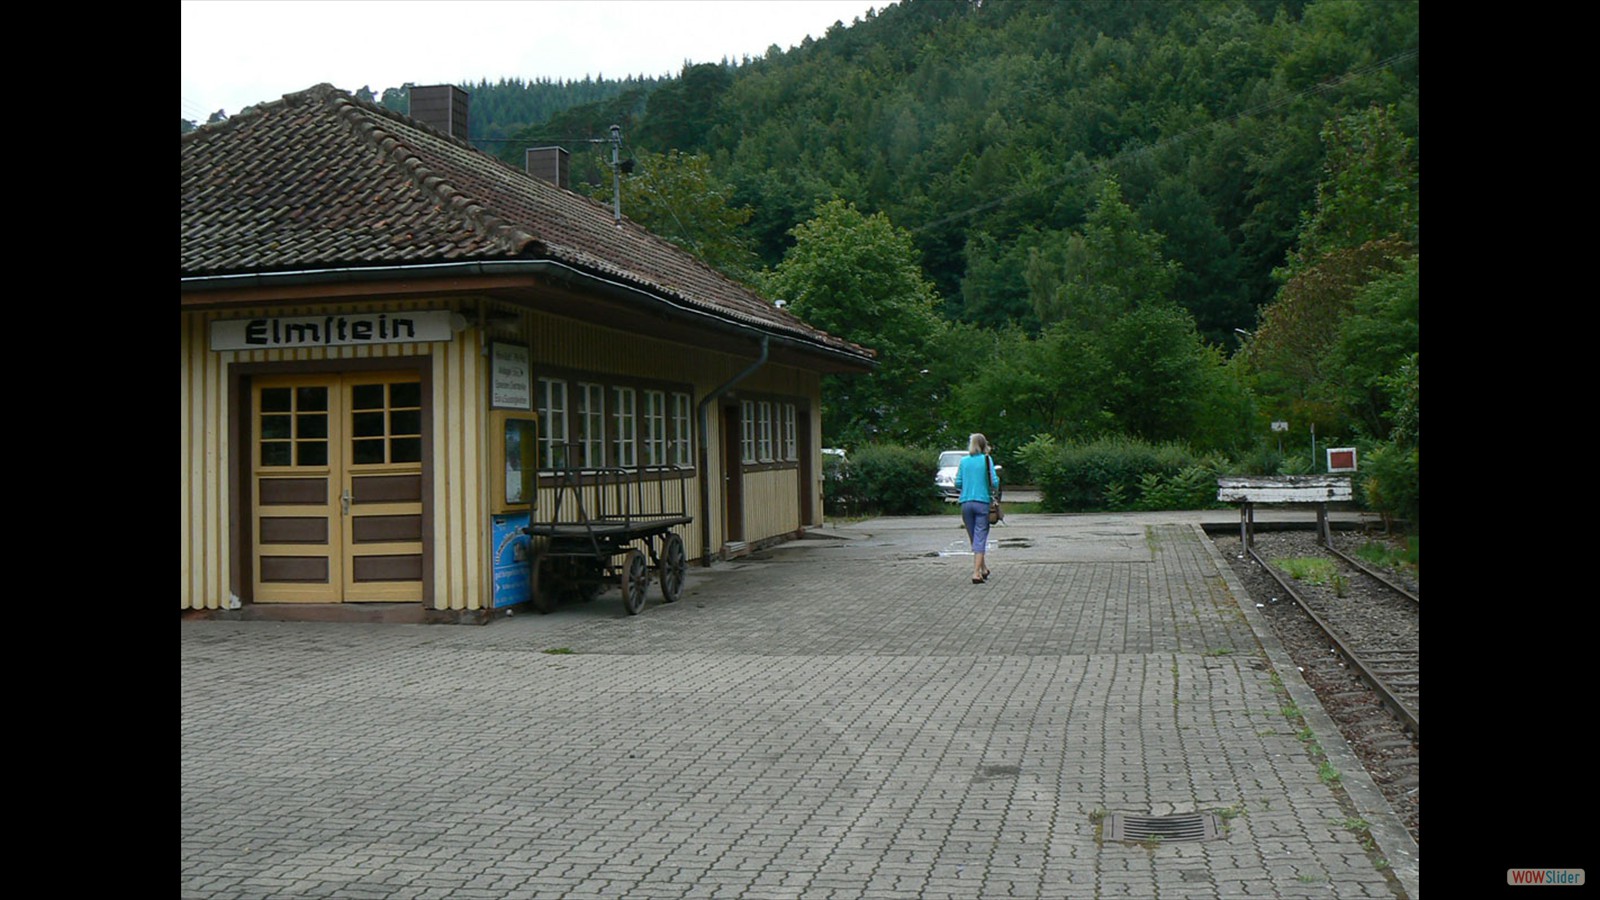 Station van Elmstein.